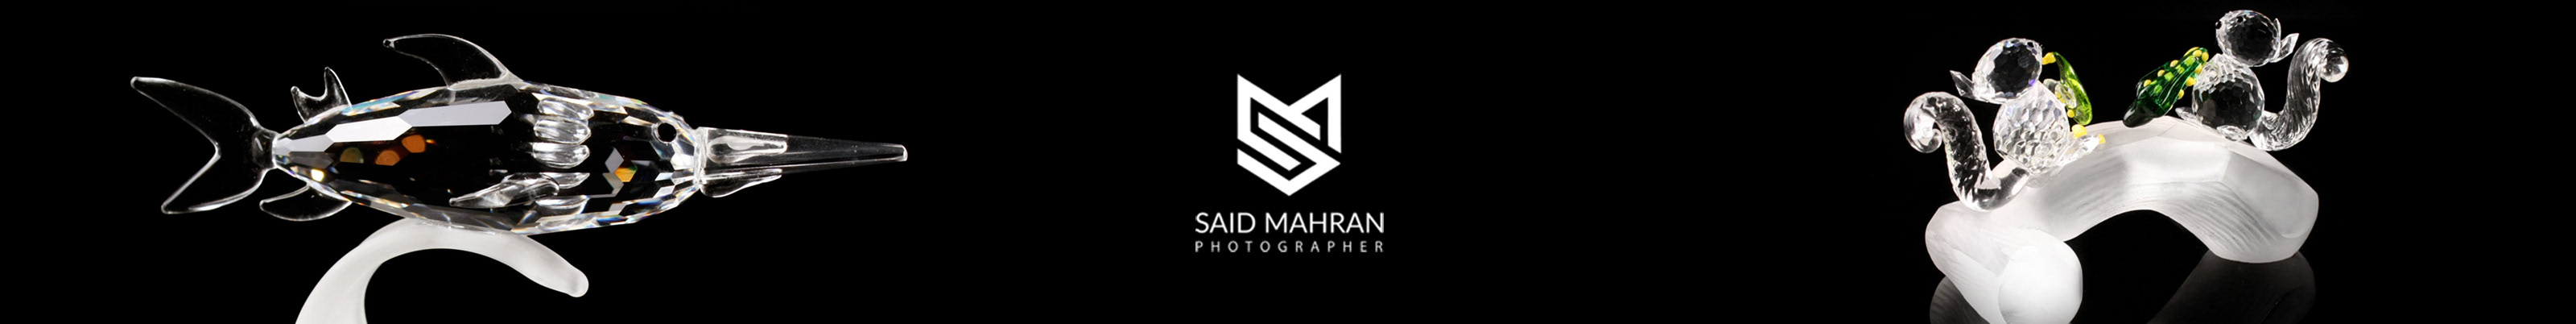 Banner de perfil de said mahran